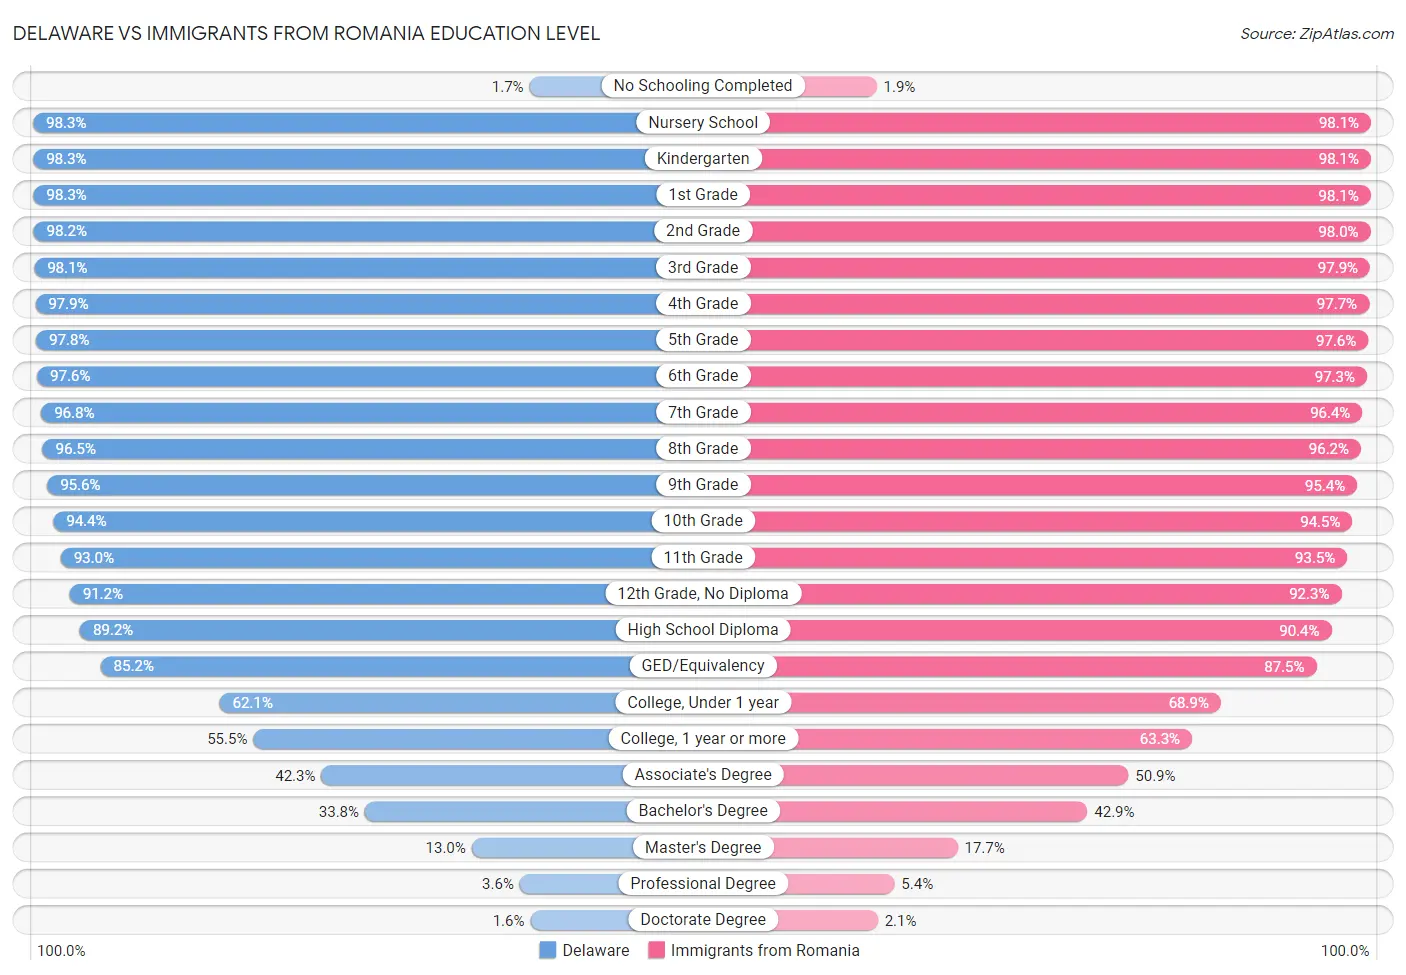 Delaware vs Immigrants from Romania Education Level